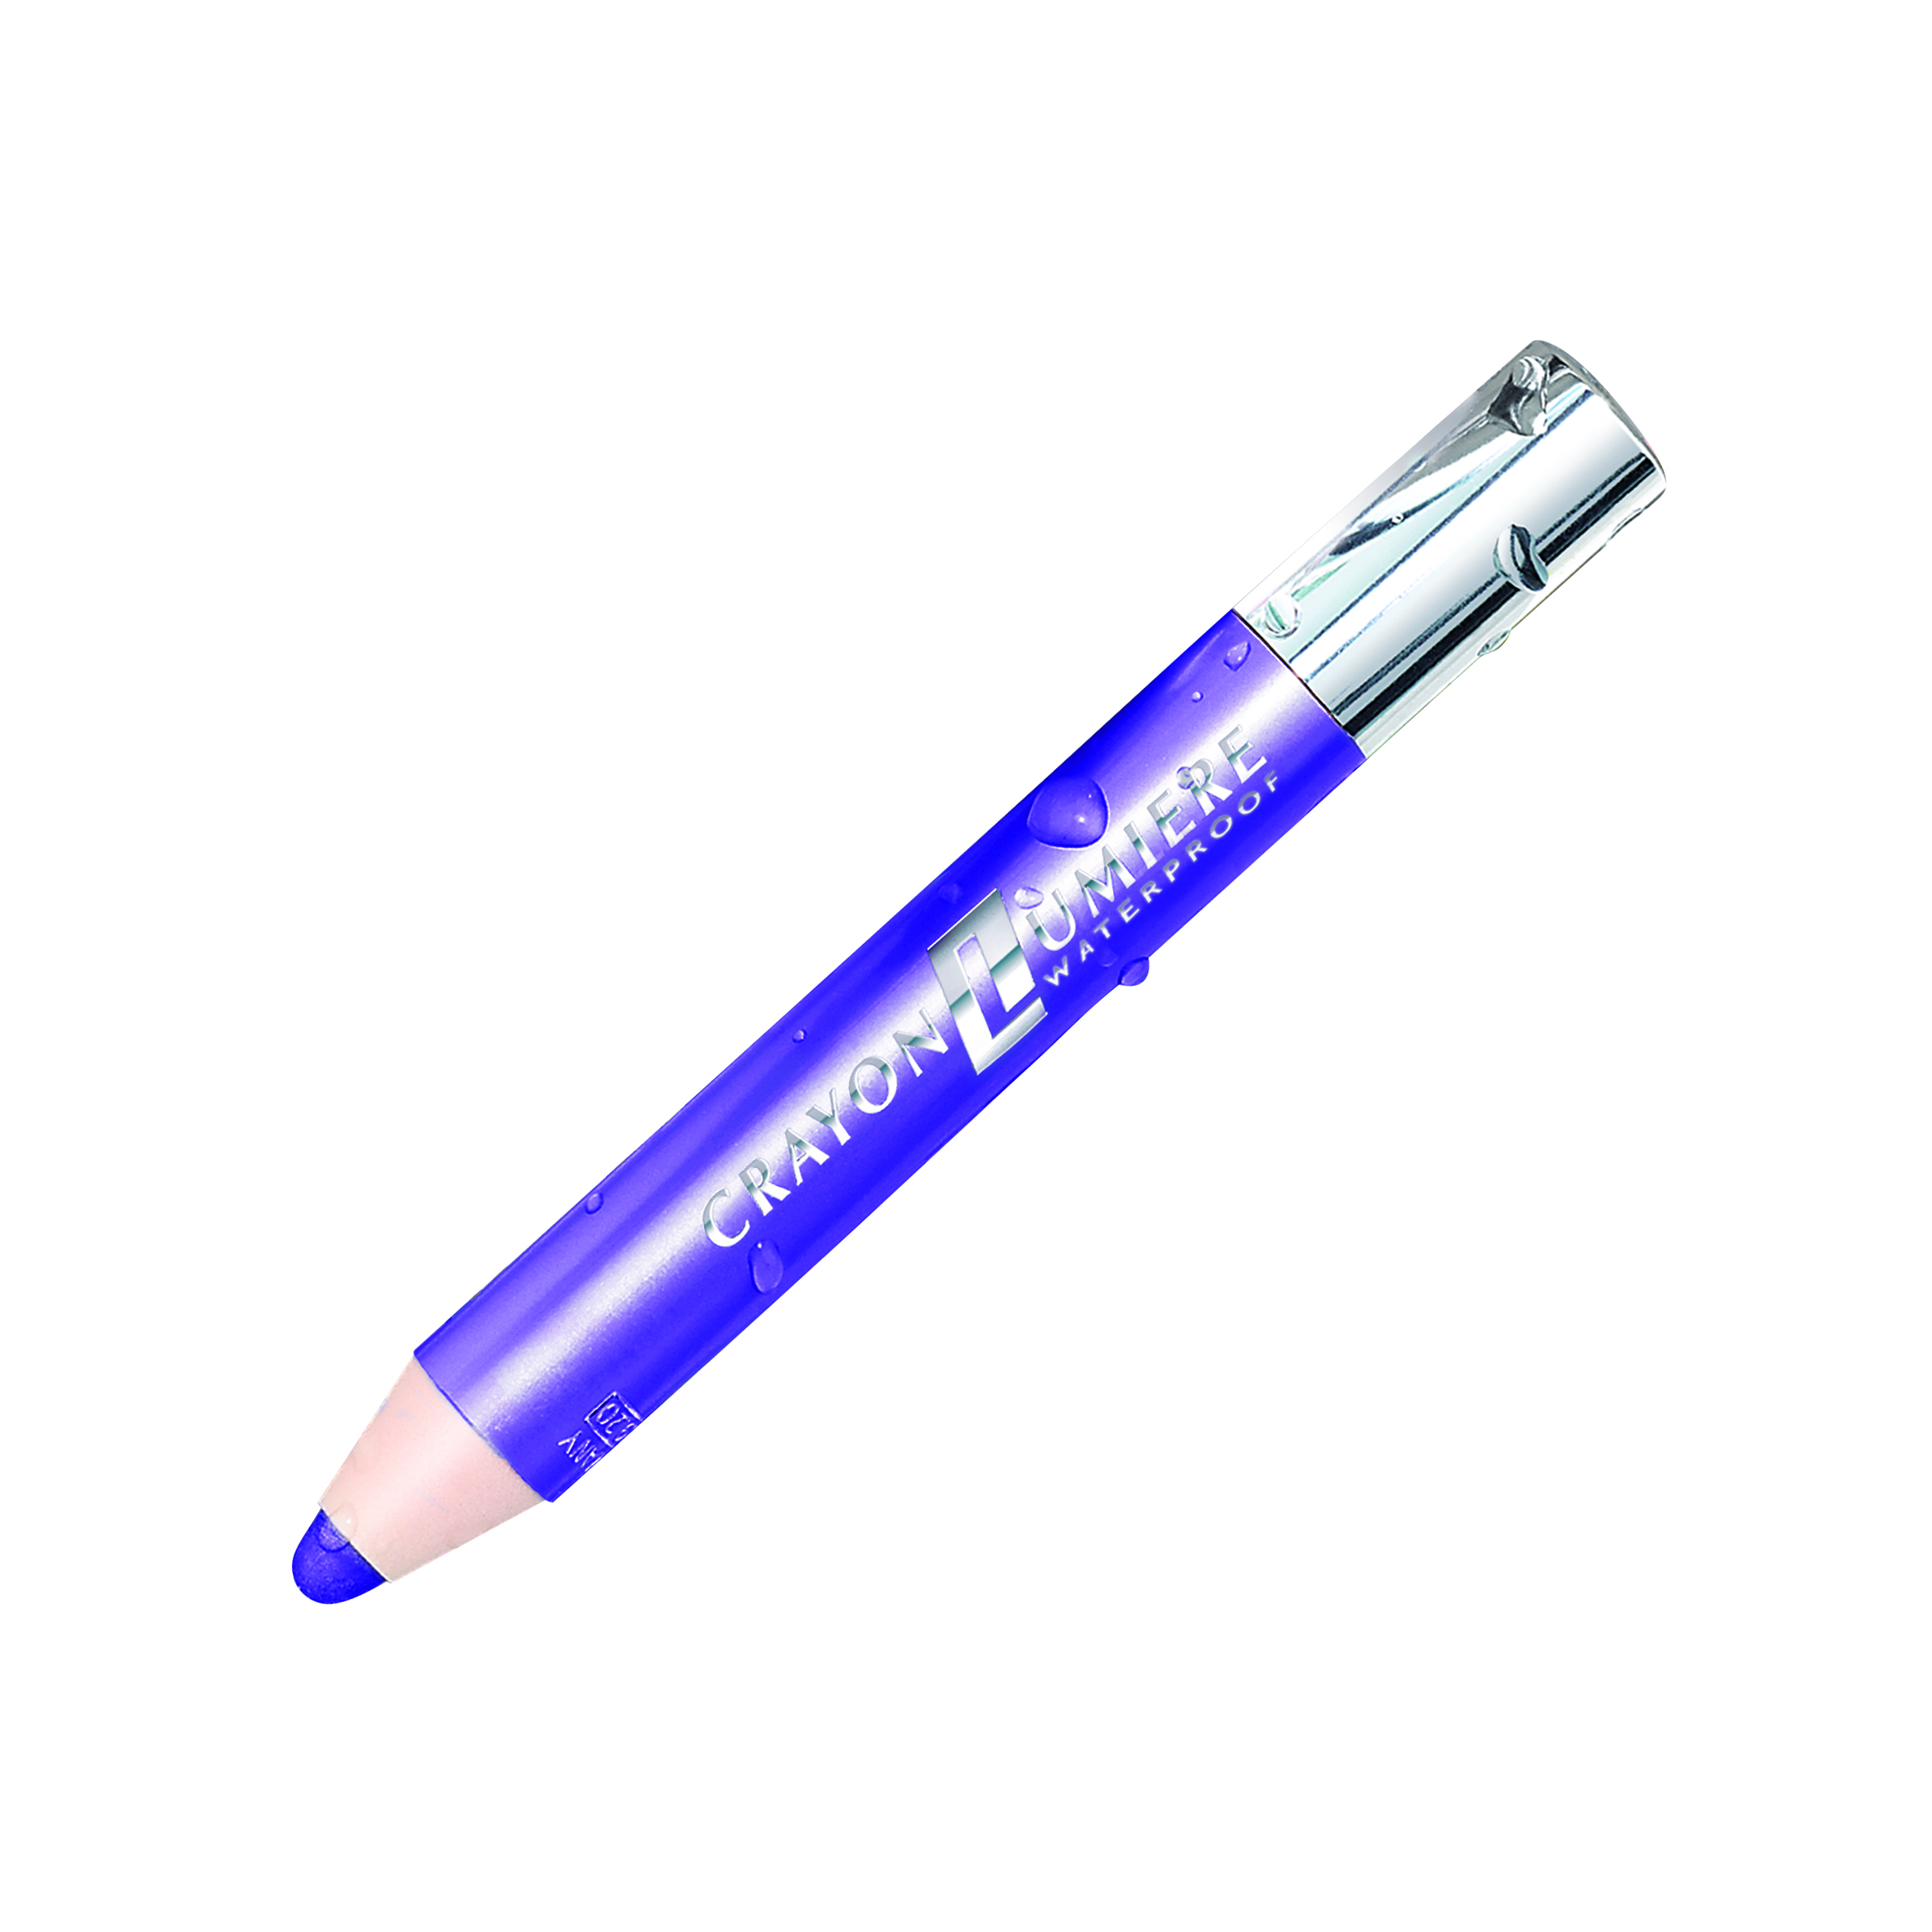 Augenschatten-Stift - Ultra Violet  (lila)  - Lang anhaltender und wasserfester Lidschatten.   